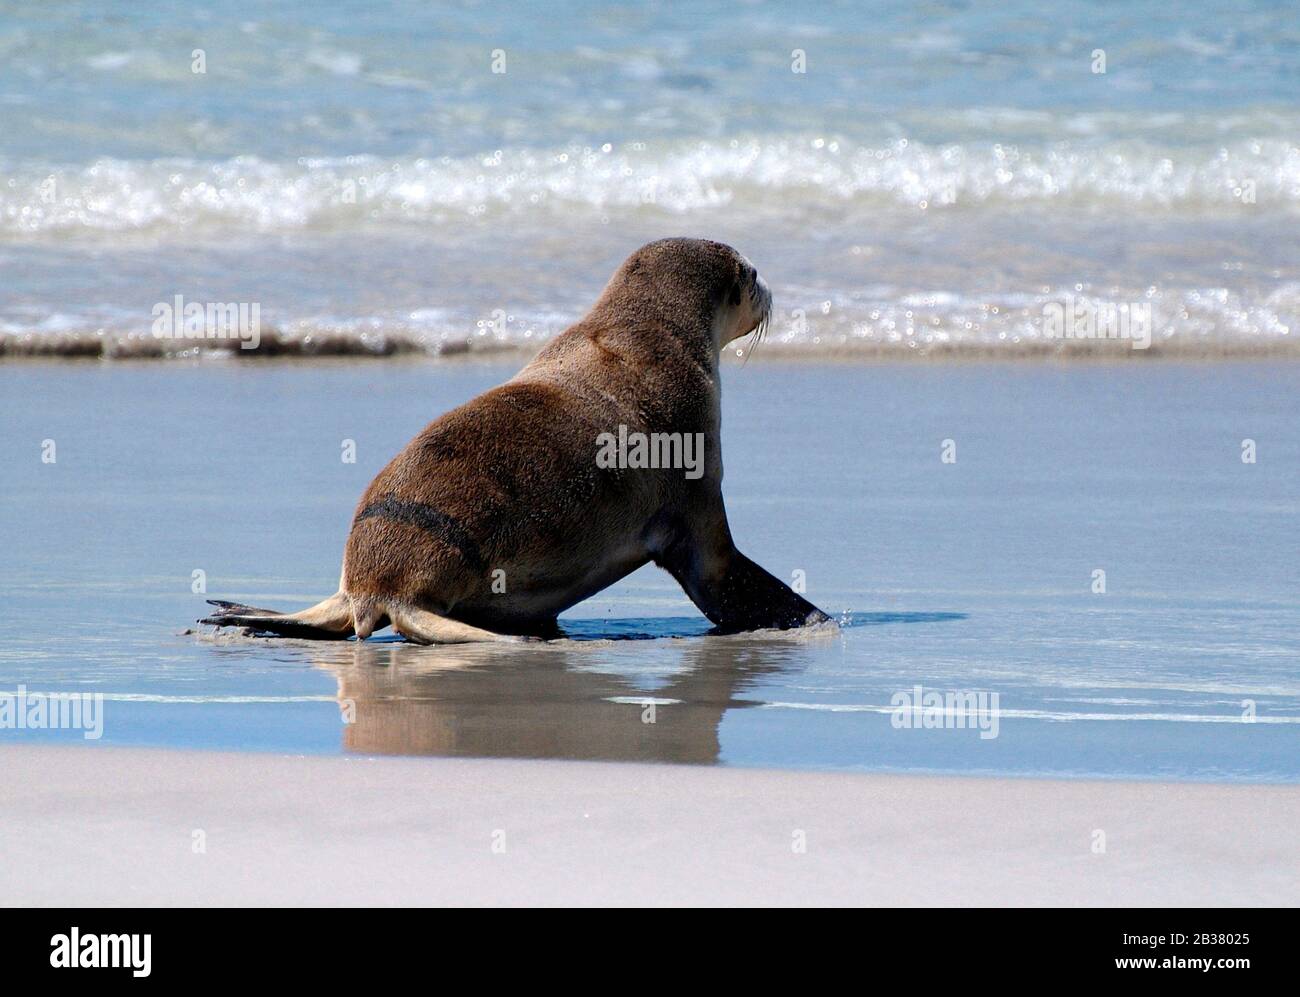 Australie, jeune lion de mer australien sur la plage de la baie de phoque sur l'île de kangourou Banque D'Images